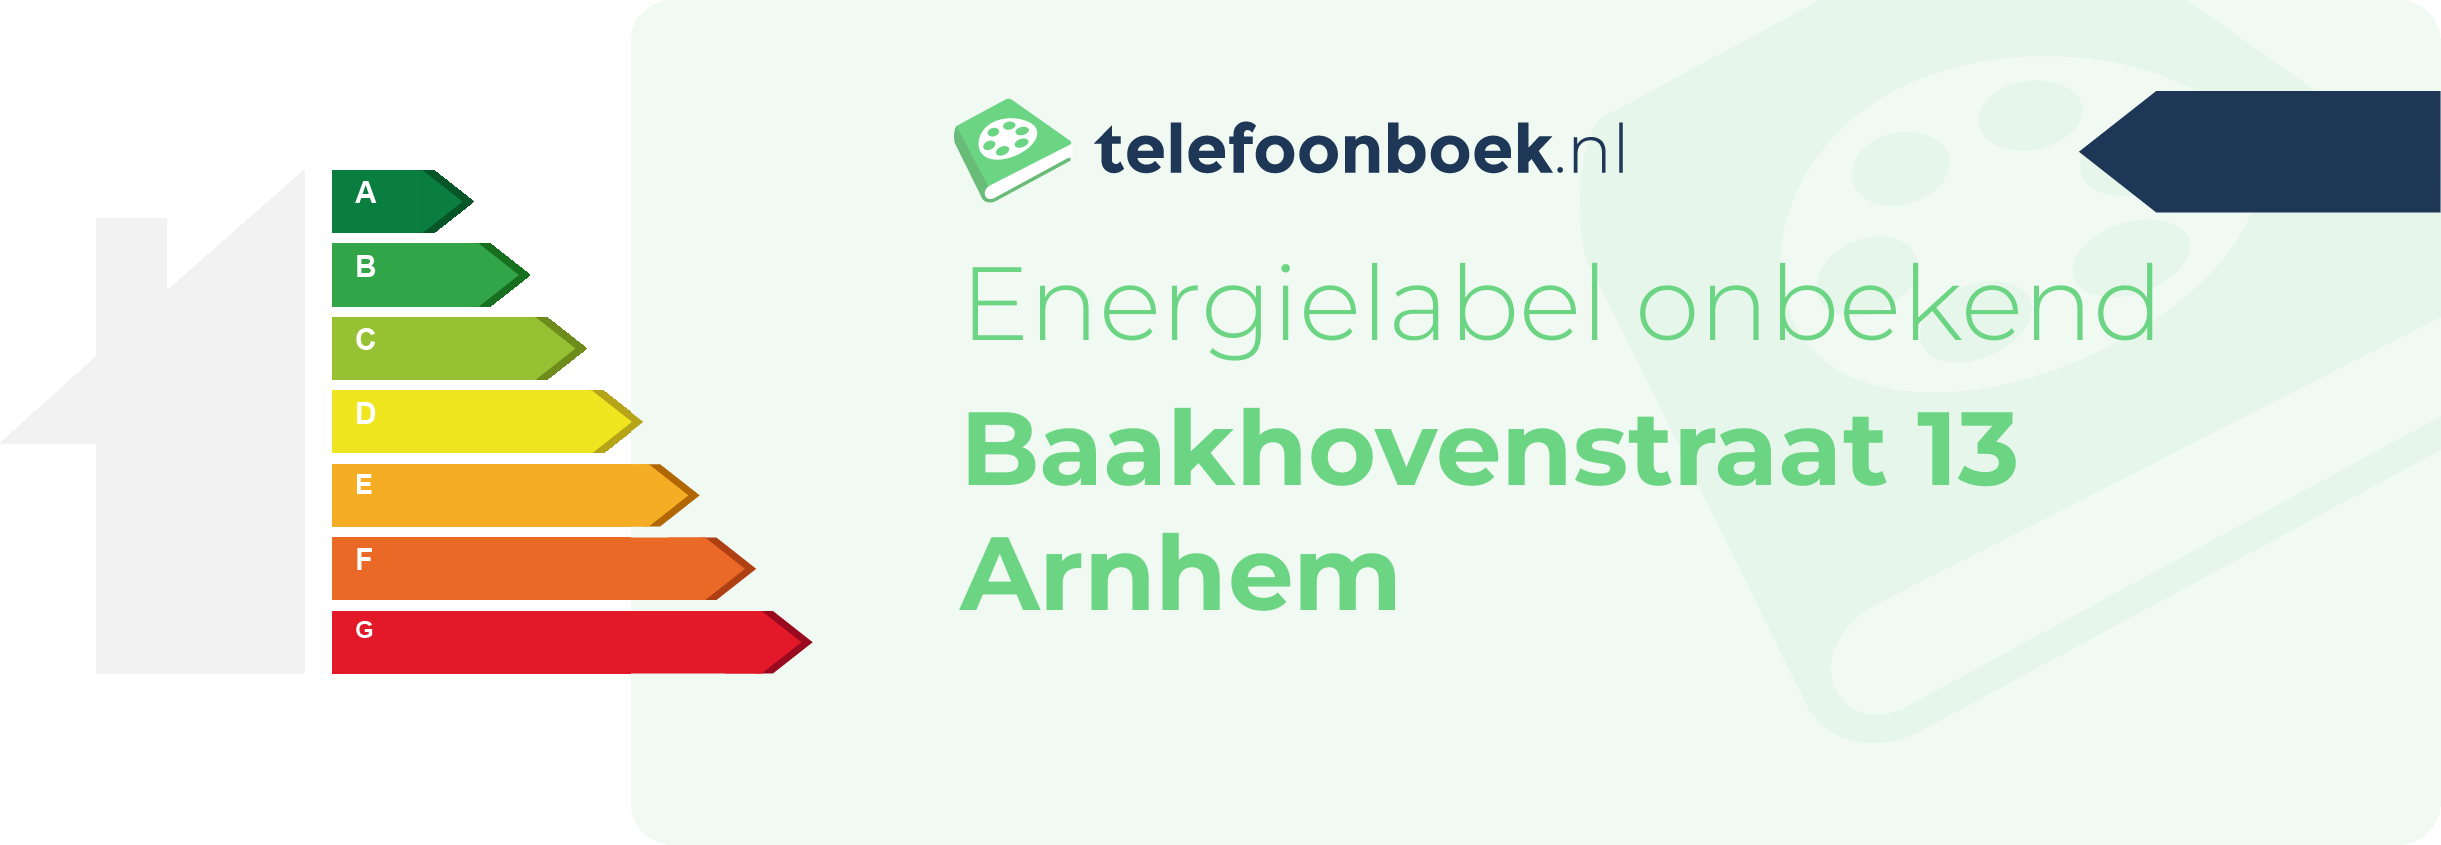 Energielabel Baakhovenstraat 13 Arnhem